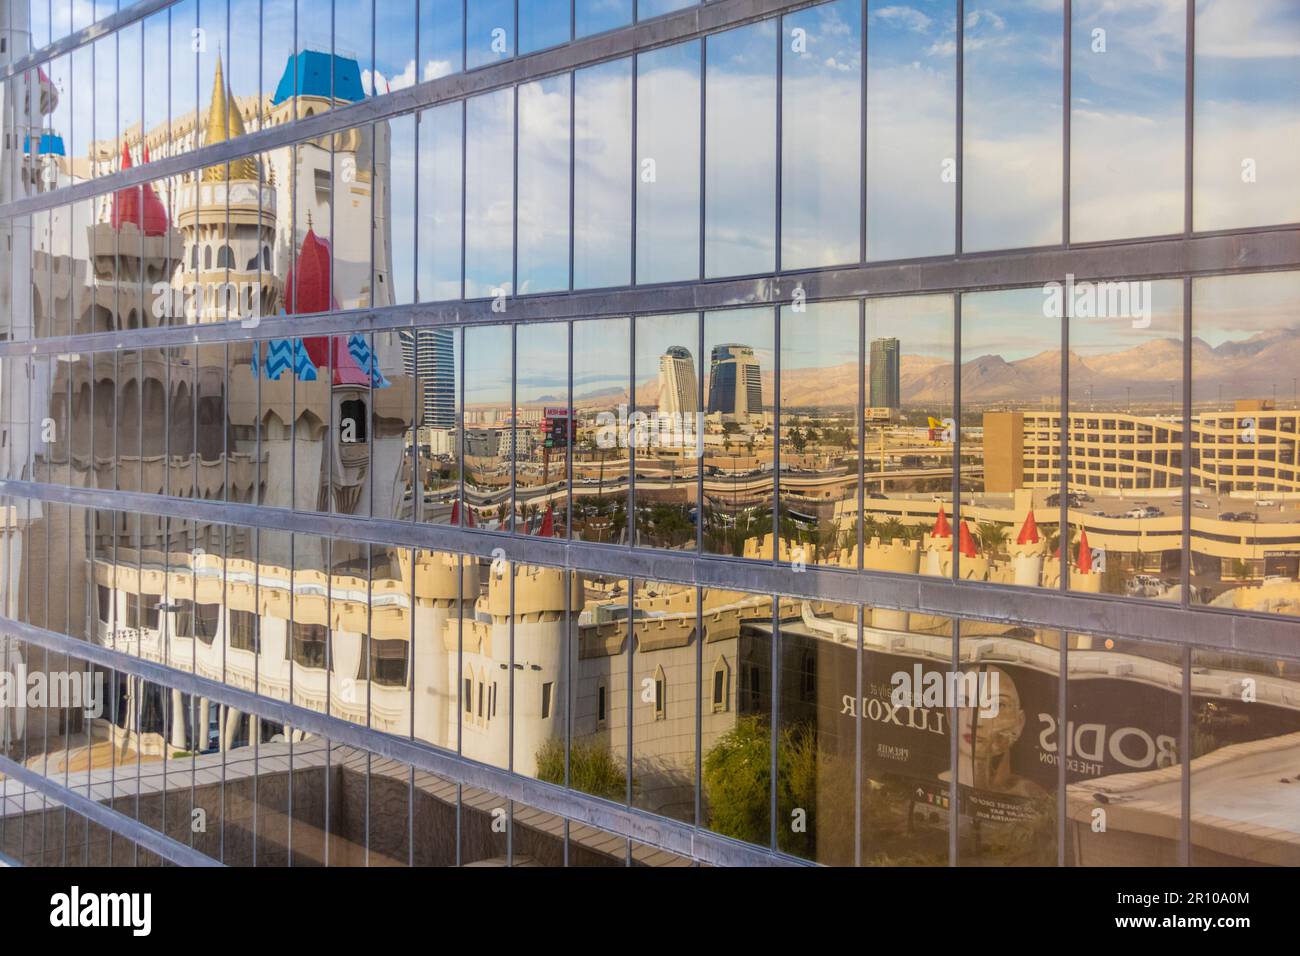 Das Excalibur Hotel, Resort und Casino in Las Vegas, Nevada. Spiegeleffekt in Windows von Luxor Hotel. Stockfoto